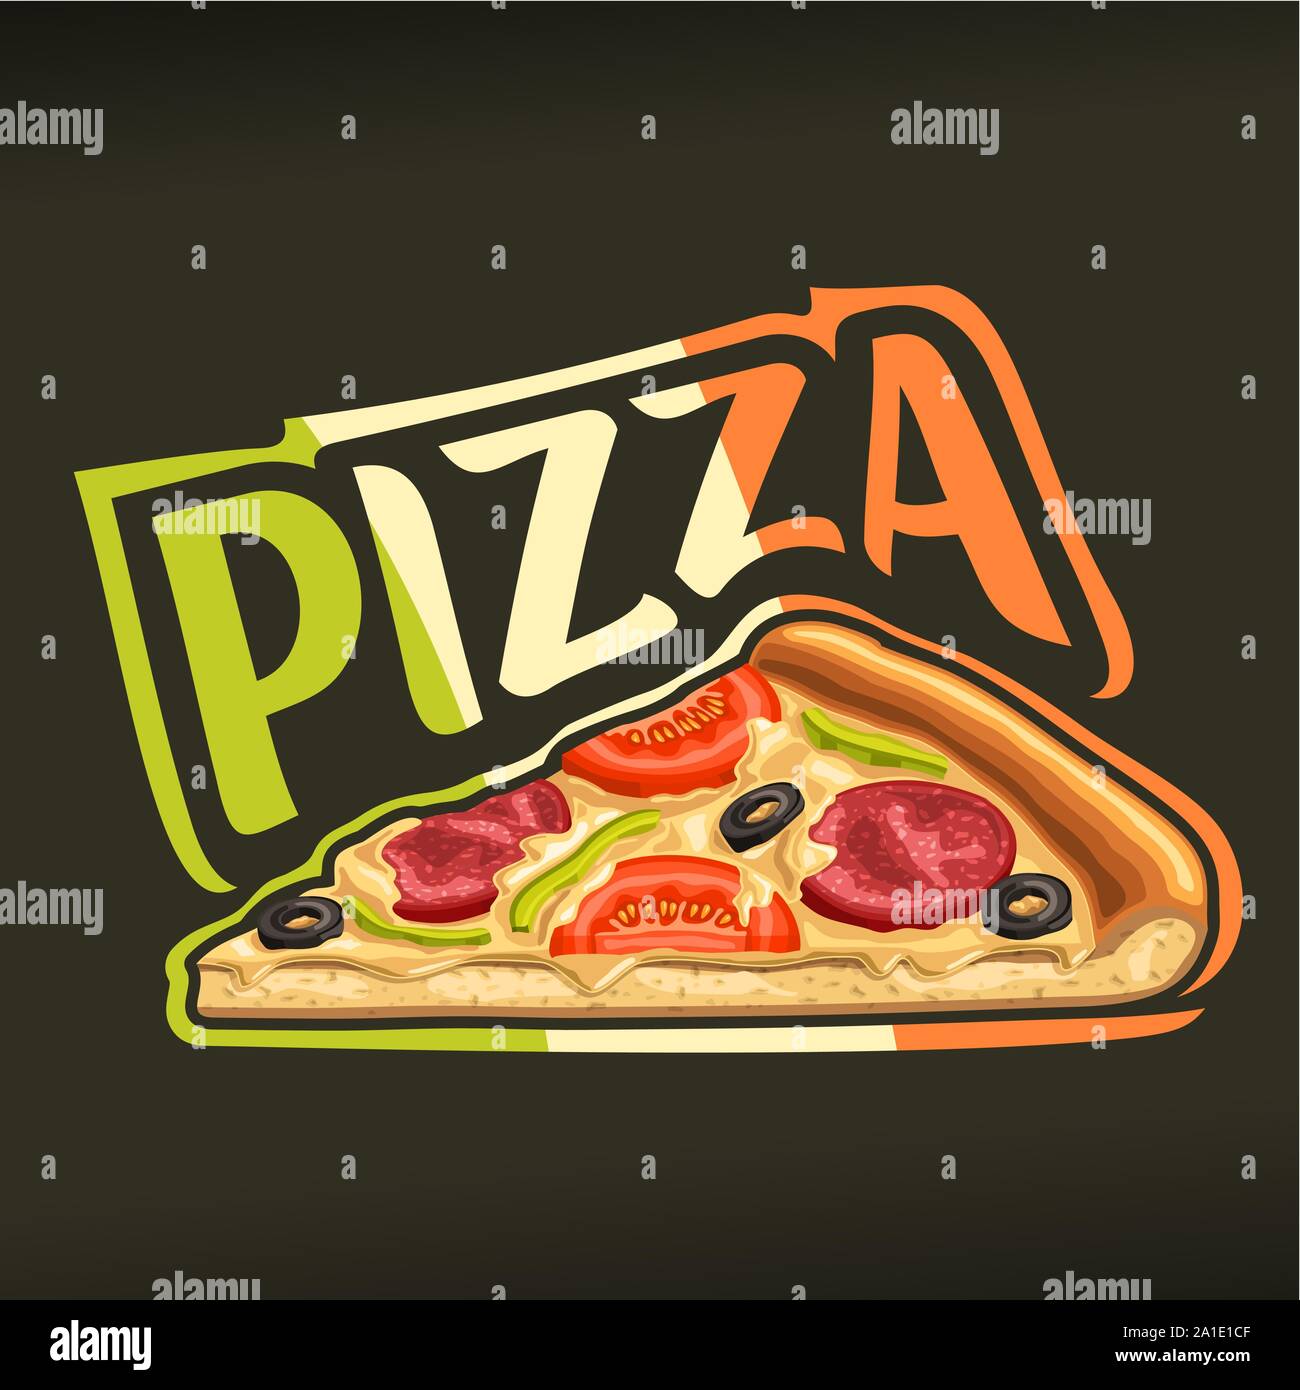 Poster del vettore per pizza: etichetta con isolati trancio di pizza fatta in casa con il formaggio fuso, salsiccia per pizza, pomodoro e olive, word pizza di colorati italiano f Illustrazione Vettoriale